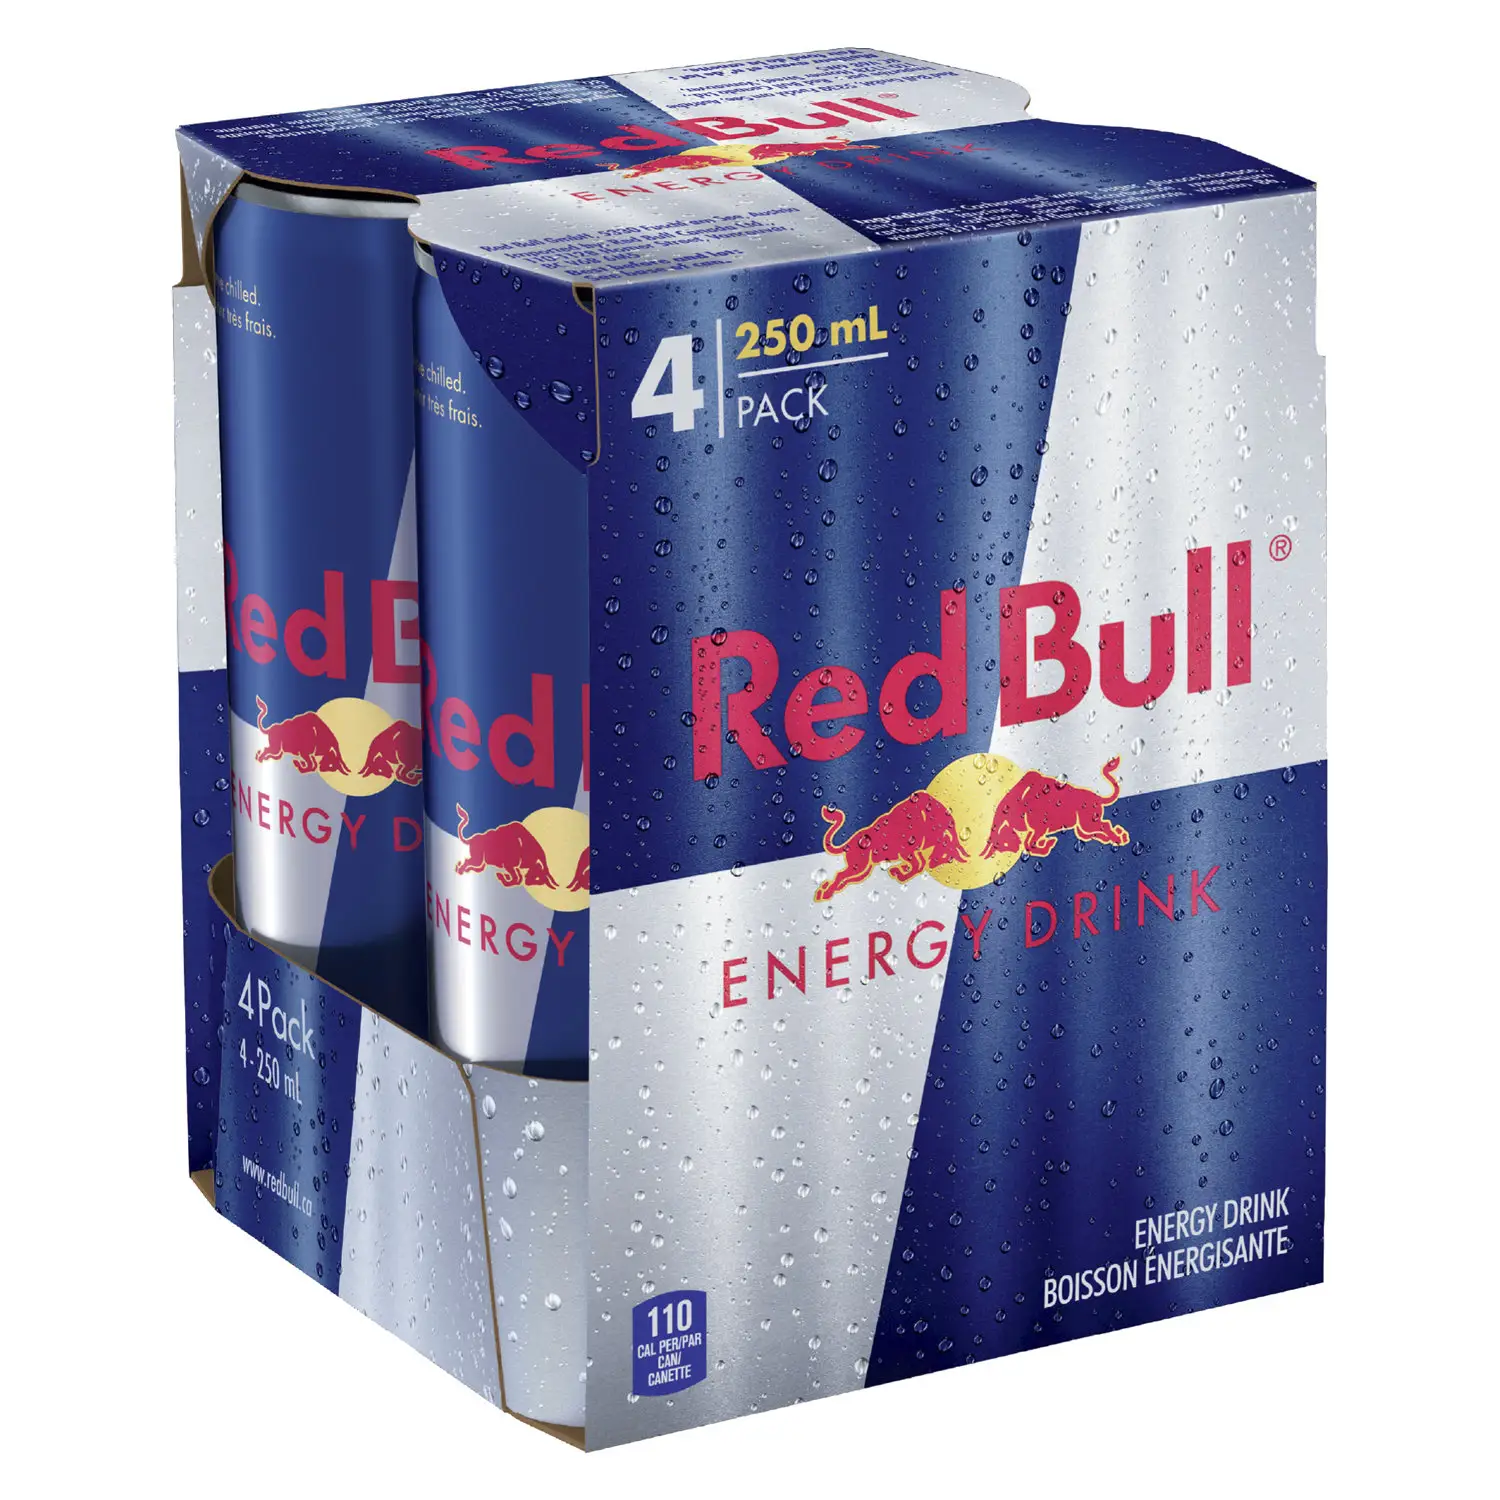 Großhandels preis Österreich Red Bull & Redbull Classic 250ml, 500ml/Red Bull 250ml Energy Drink (frische Brühe)